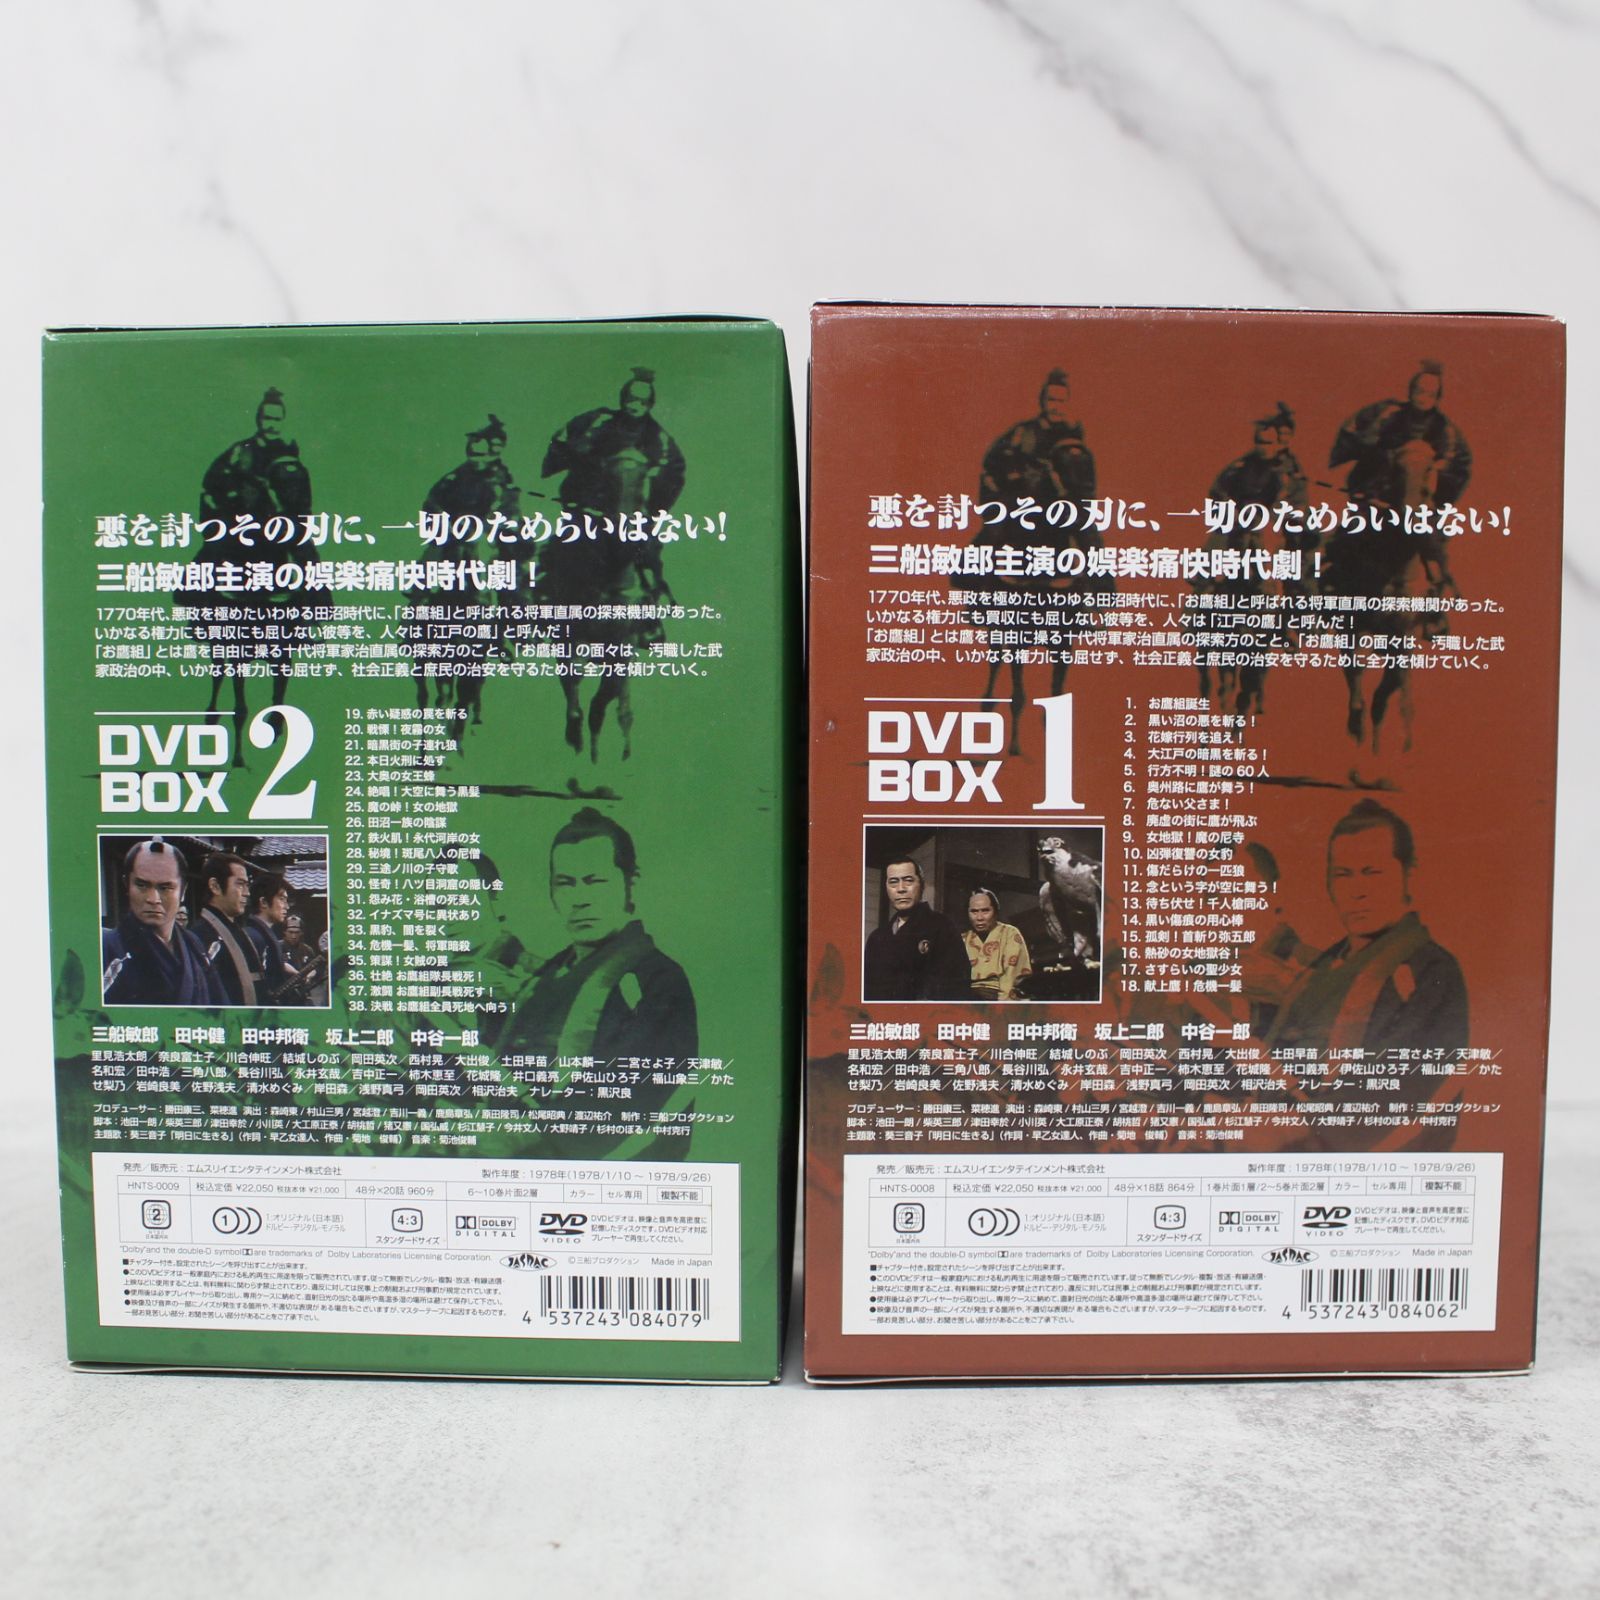 S135)【2点セット】江戸の鷹 御用部屋犯科帖 DVD-BOX 1・2 10枚組 三船敏郎 田中健